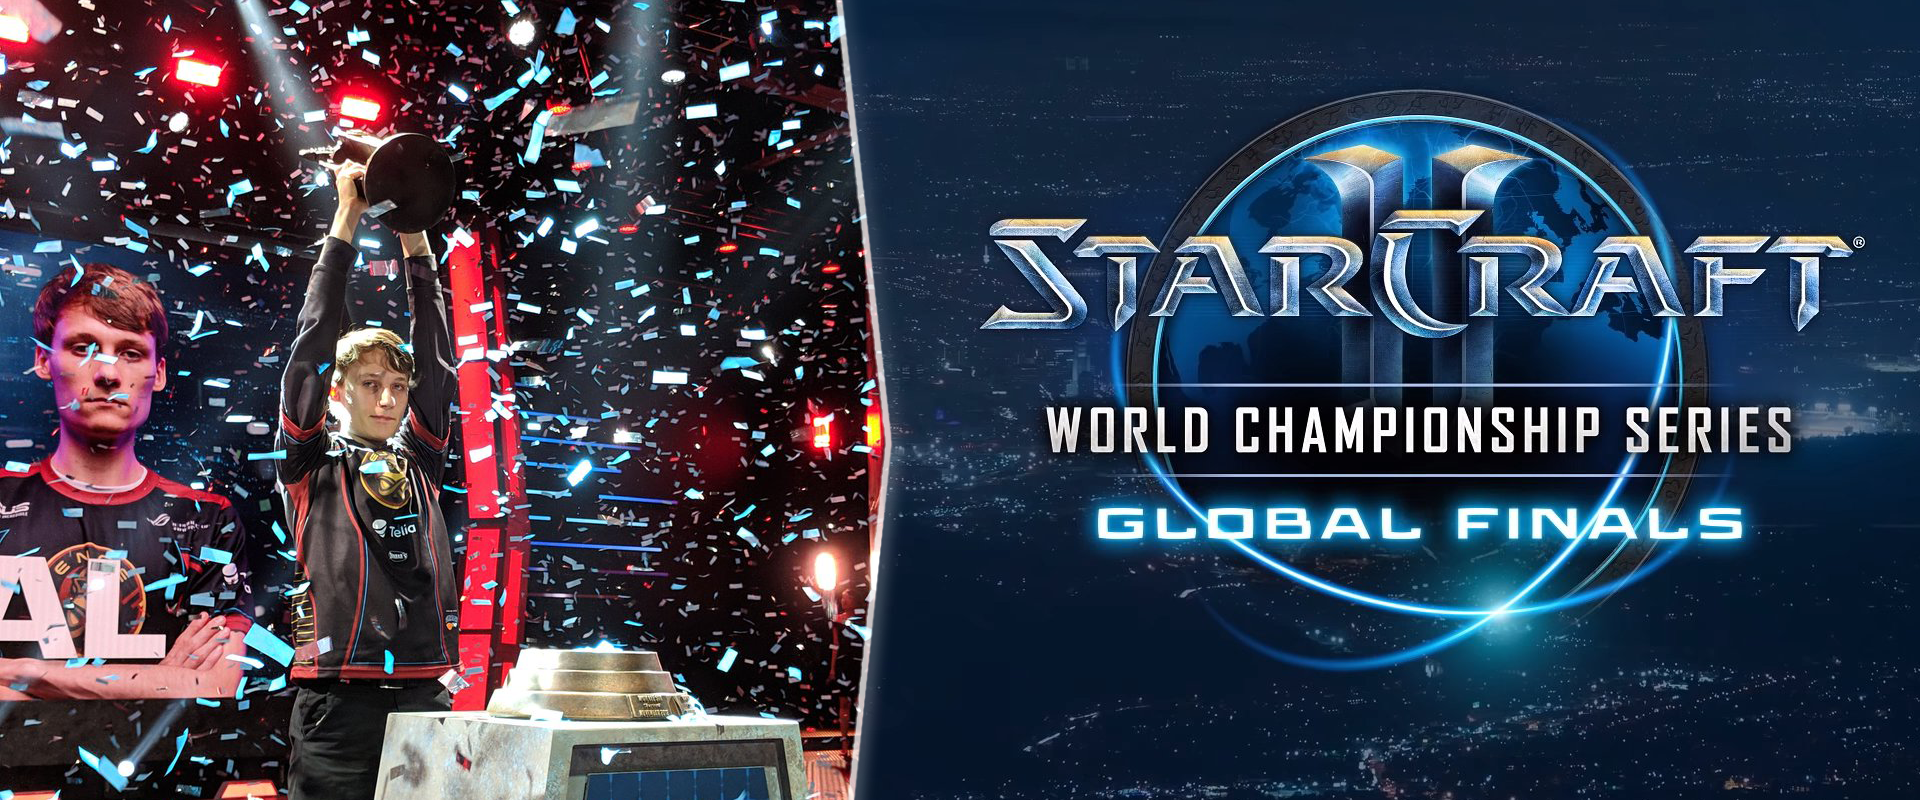 Serral lábai előtt hever a világ: európai győztest avattak a 2018-as StarCraft 2 WCS-en